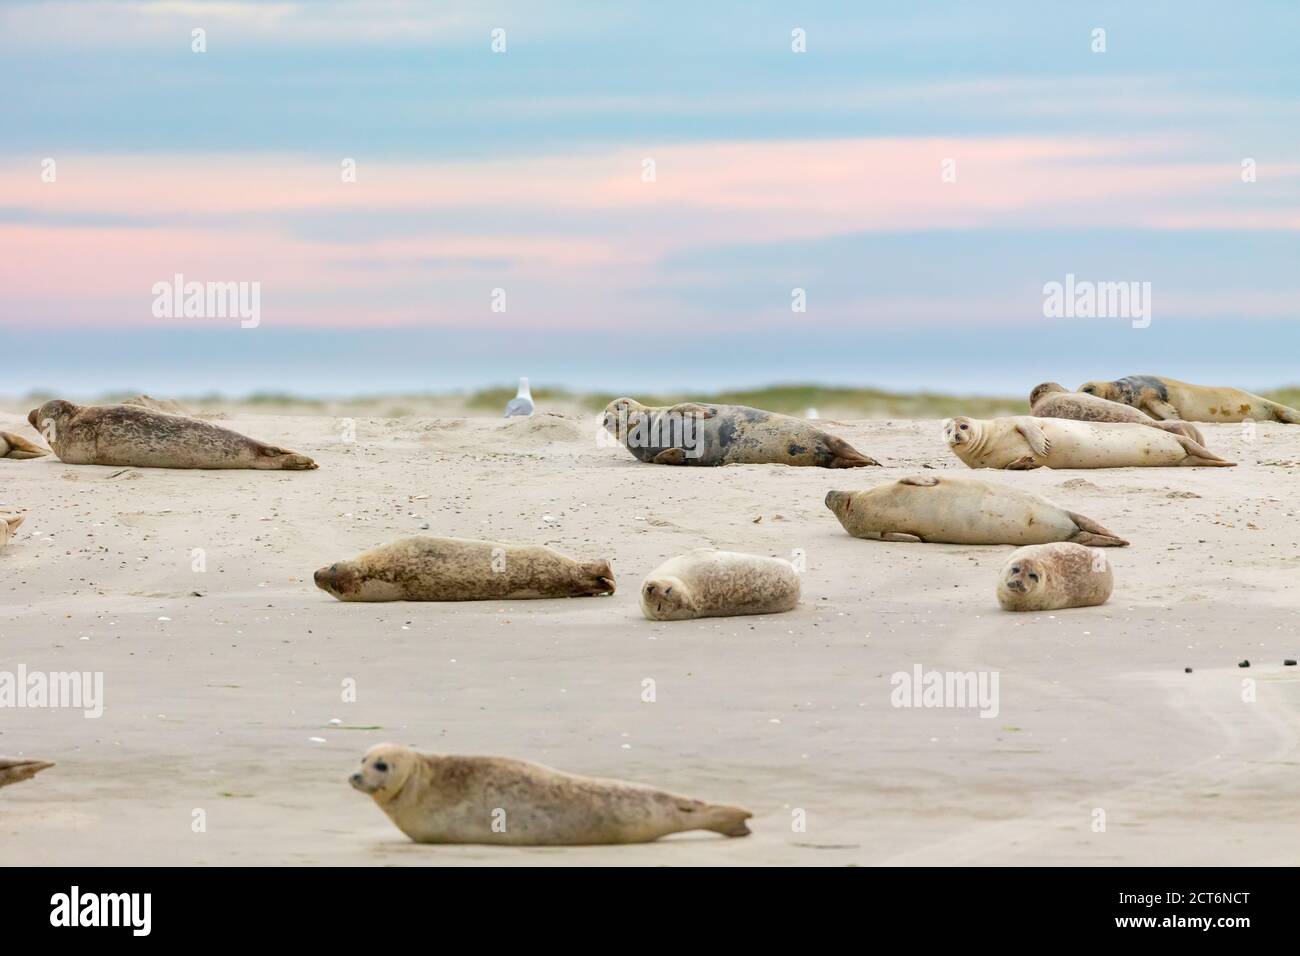 Le foche del porto (Phoca vitulina) su un banco di sabbia nel mare di wadden, nell'isola della Frisia orientale Juist, Germania. Foto Stock